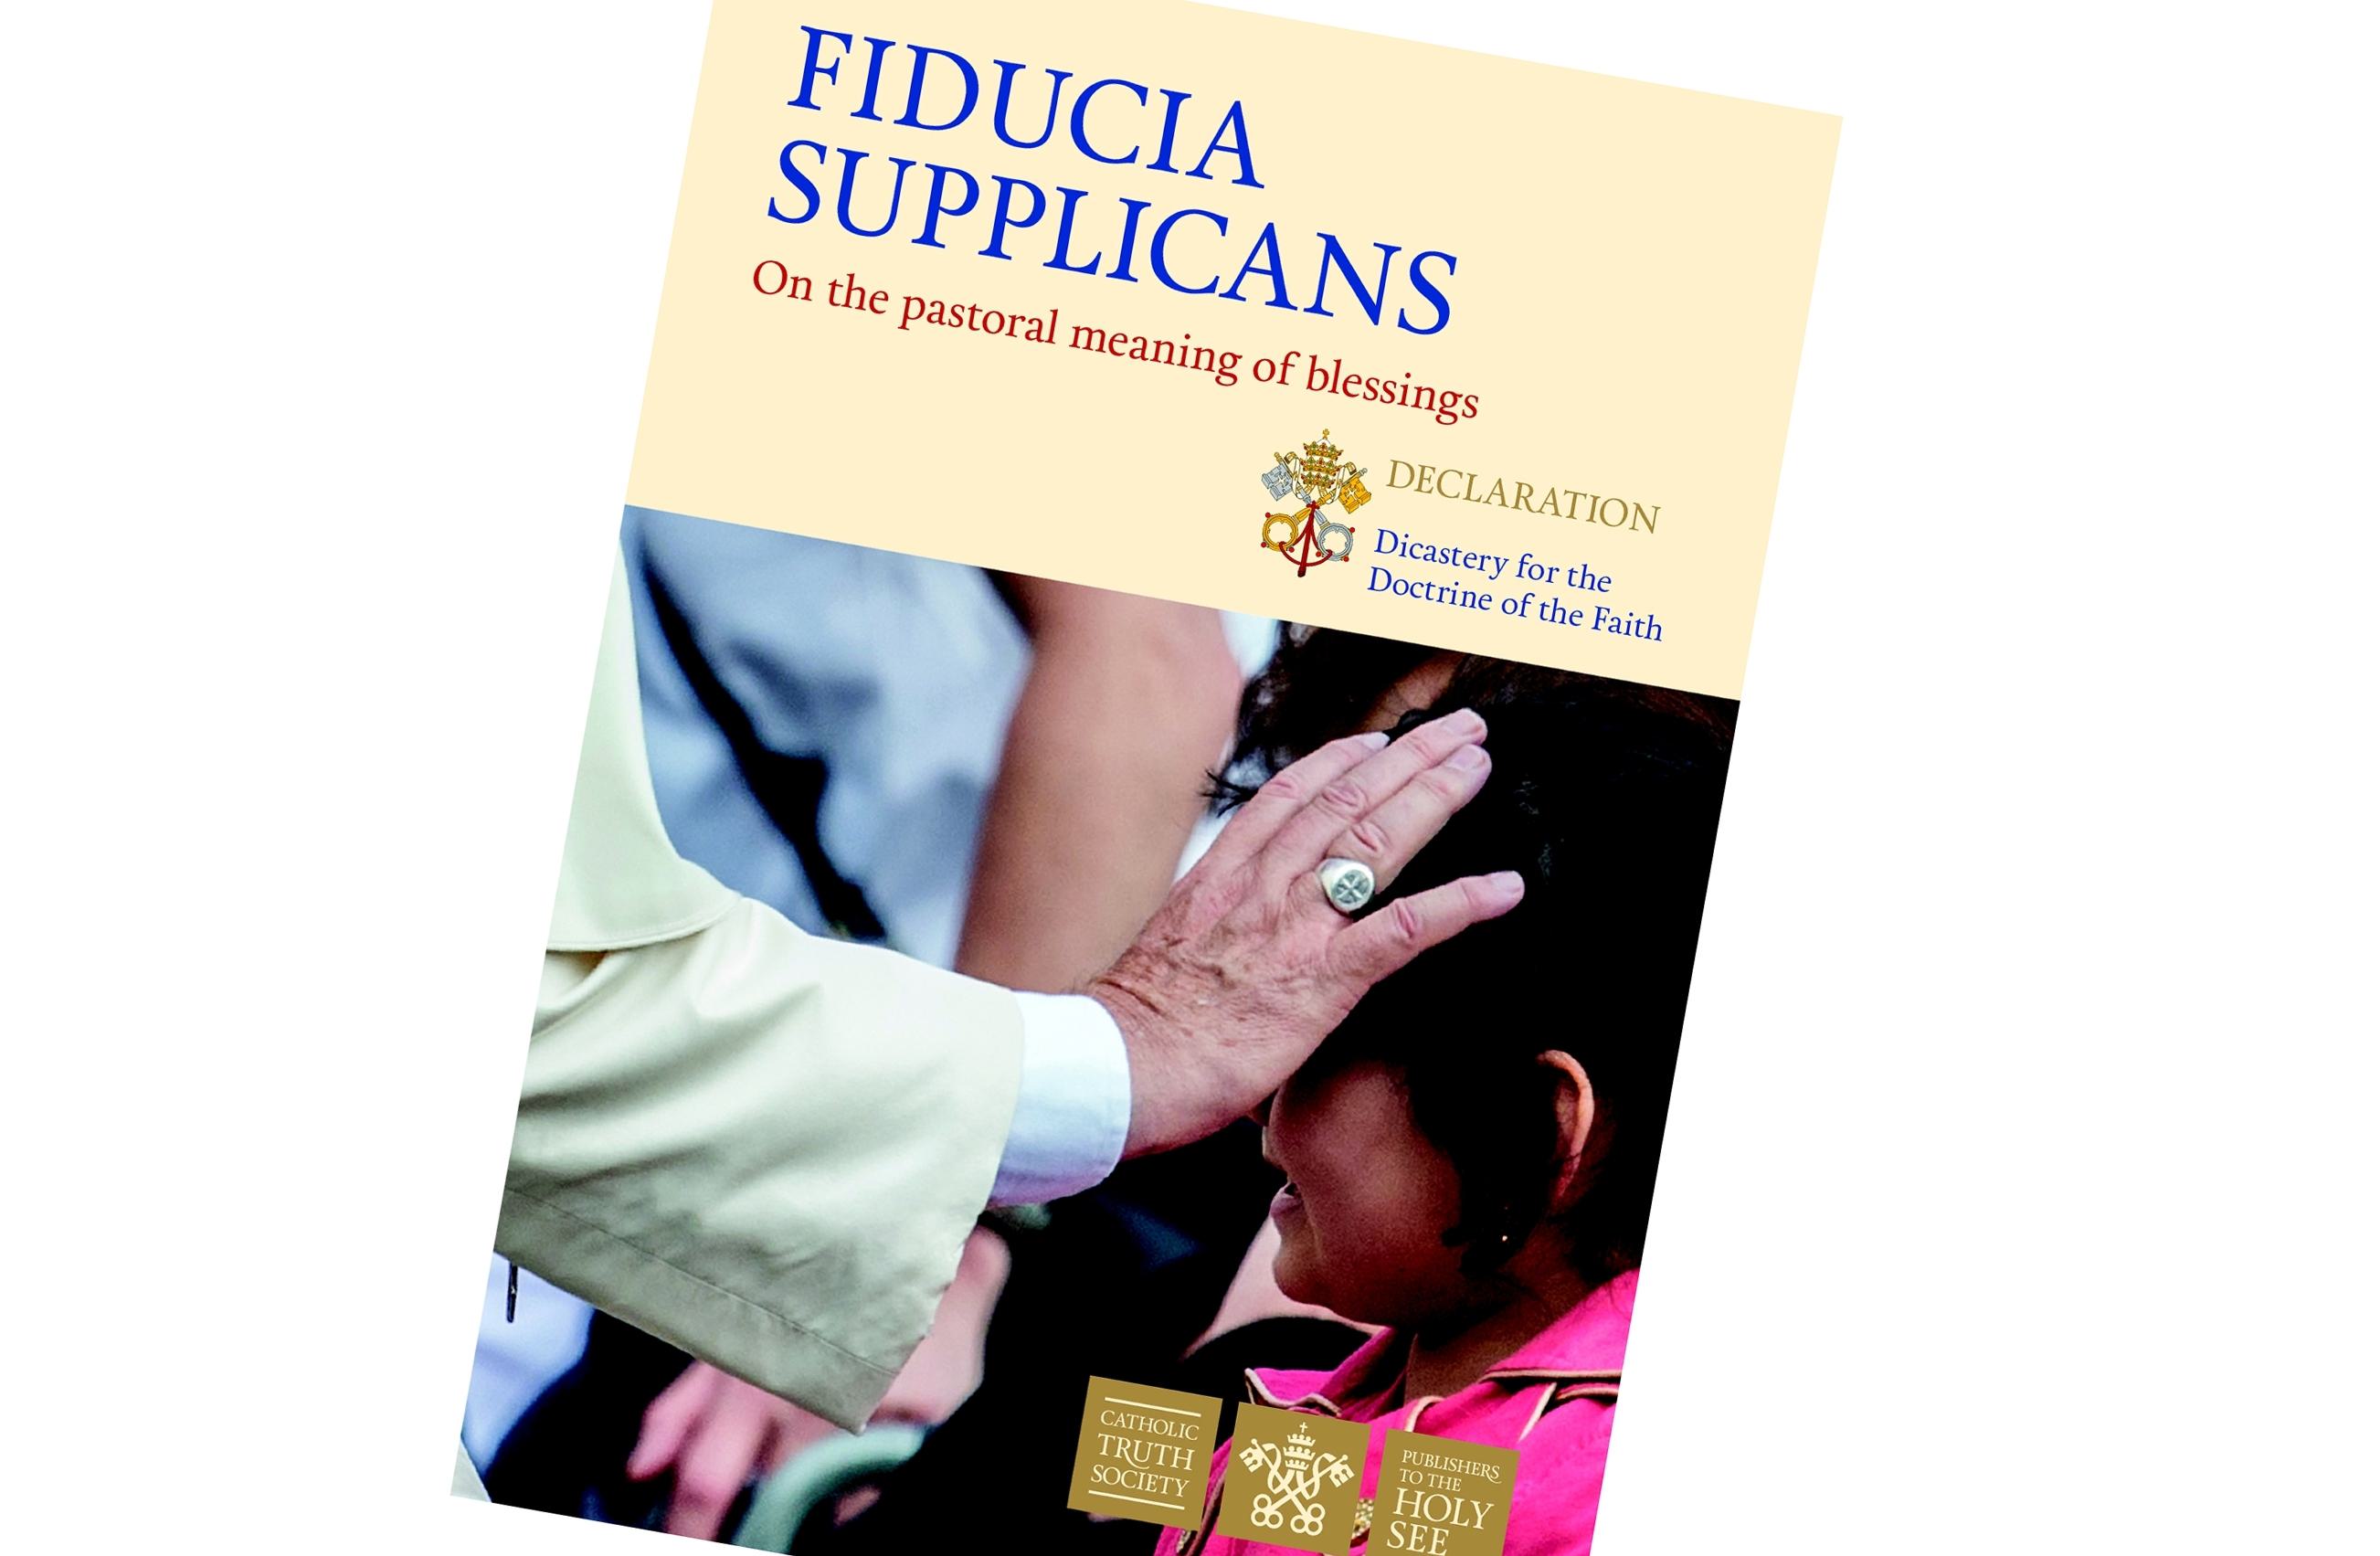 Beschouwingen over de verklaring van de Nederlandse bisschoppen over het document Fiducia supplicans